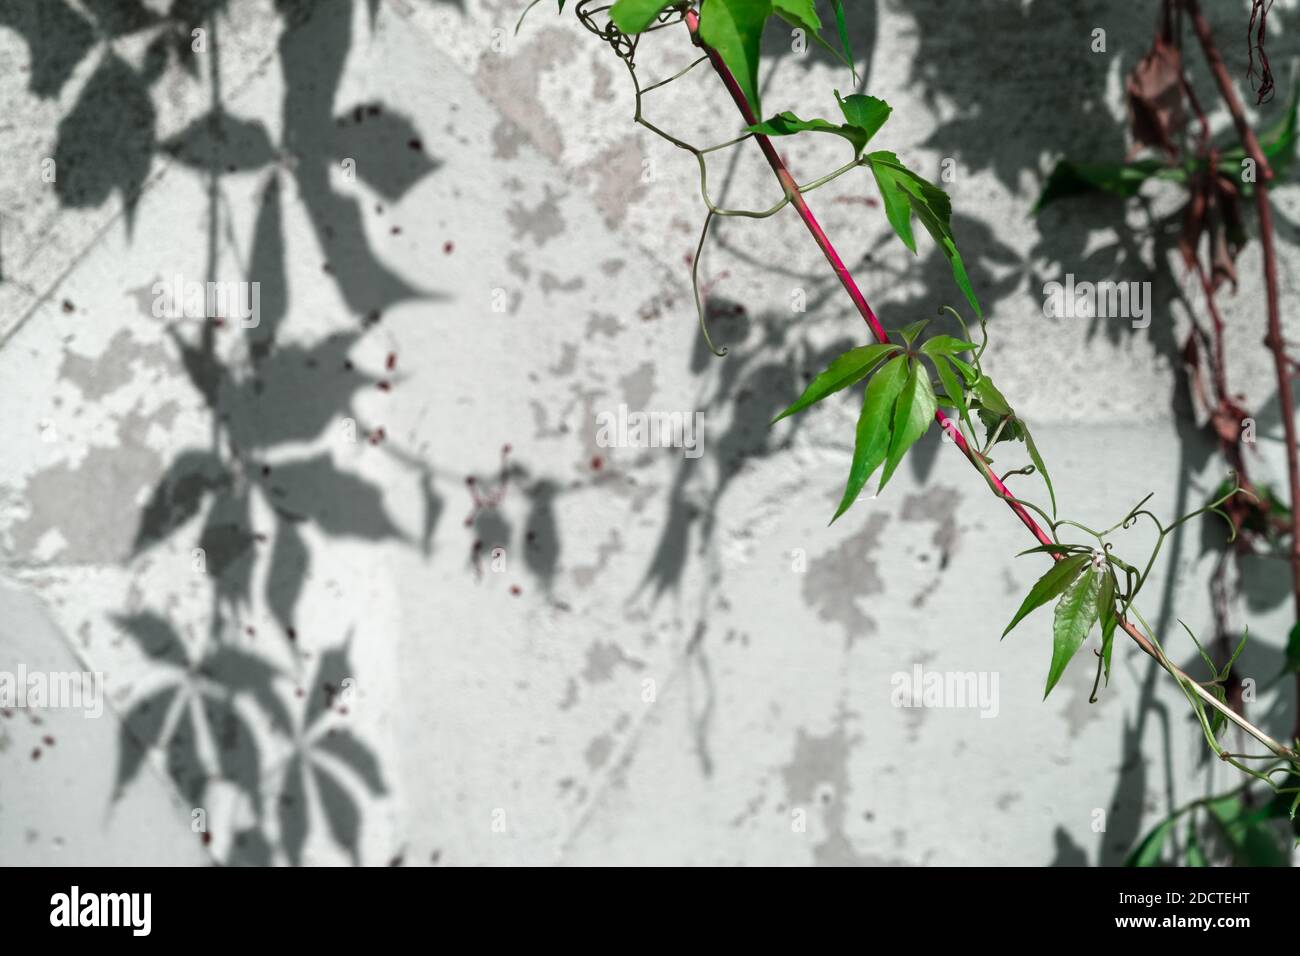 Un super-réducteur se tord lors d'une journée d'été ensoleillée avec un tige rouge et feuilles vertes sur un fond de a. mur blanc sur lequel se forme un motif d'ombres de plantes Banque D'Images